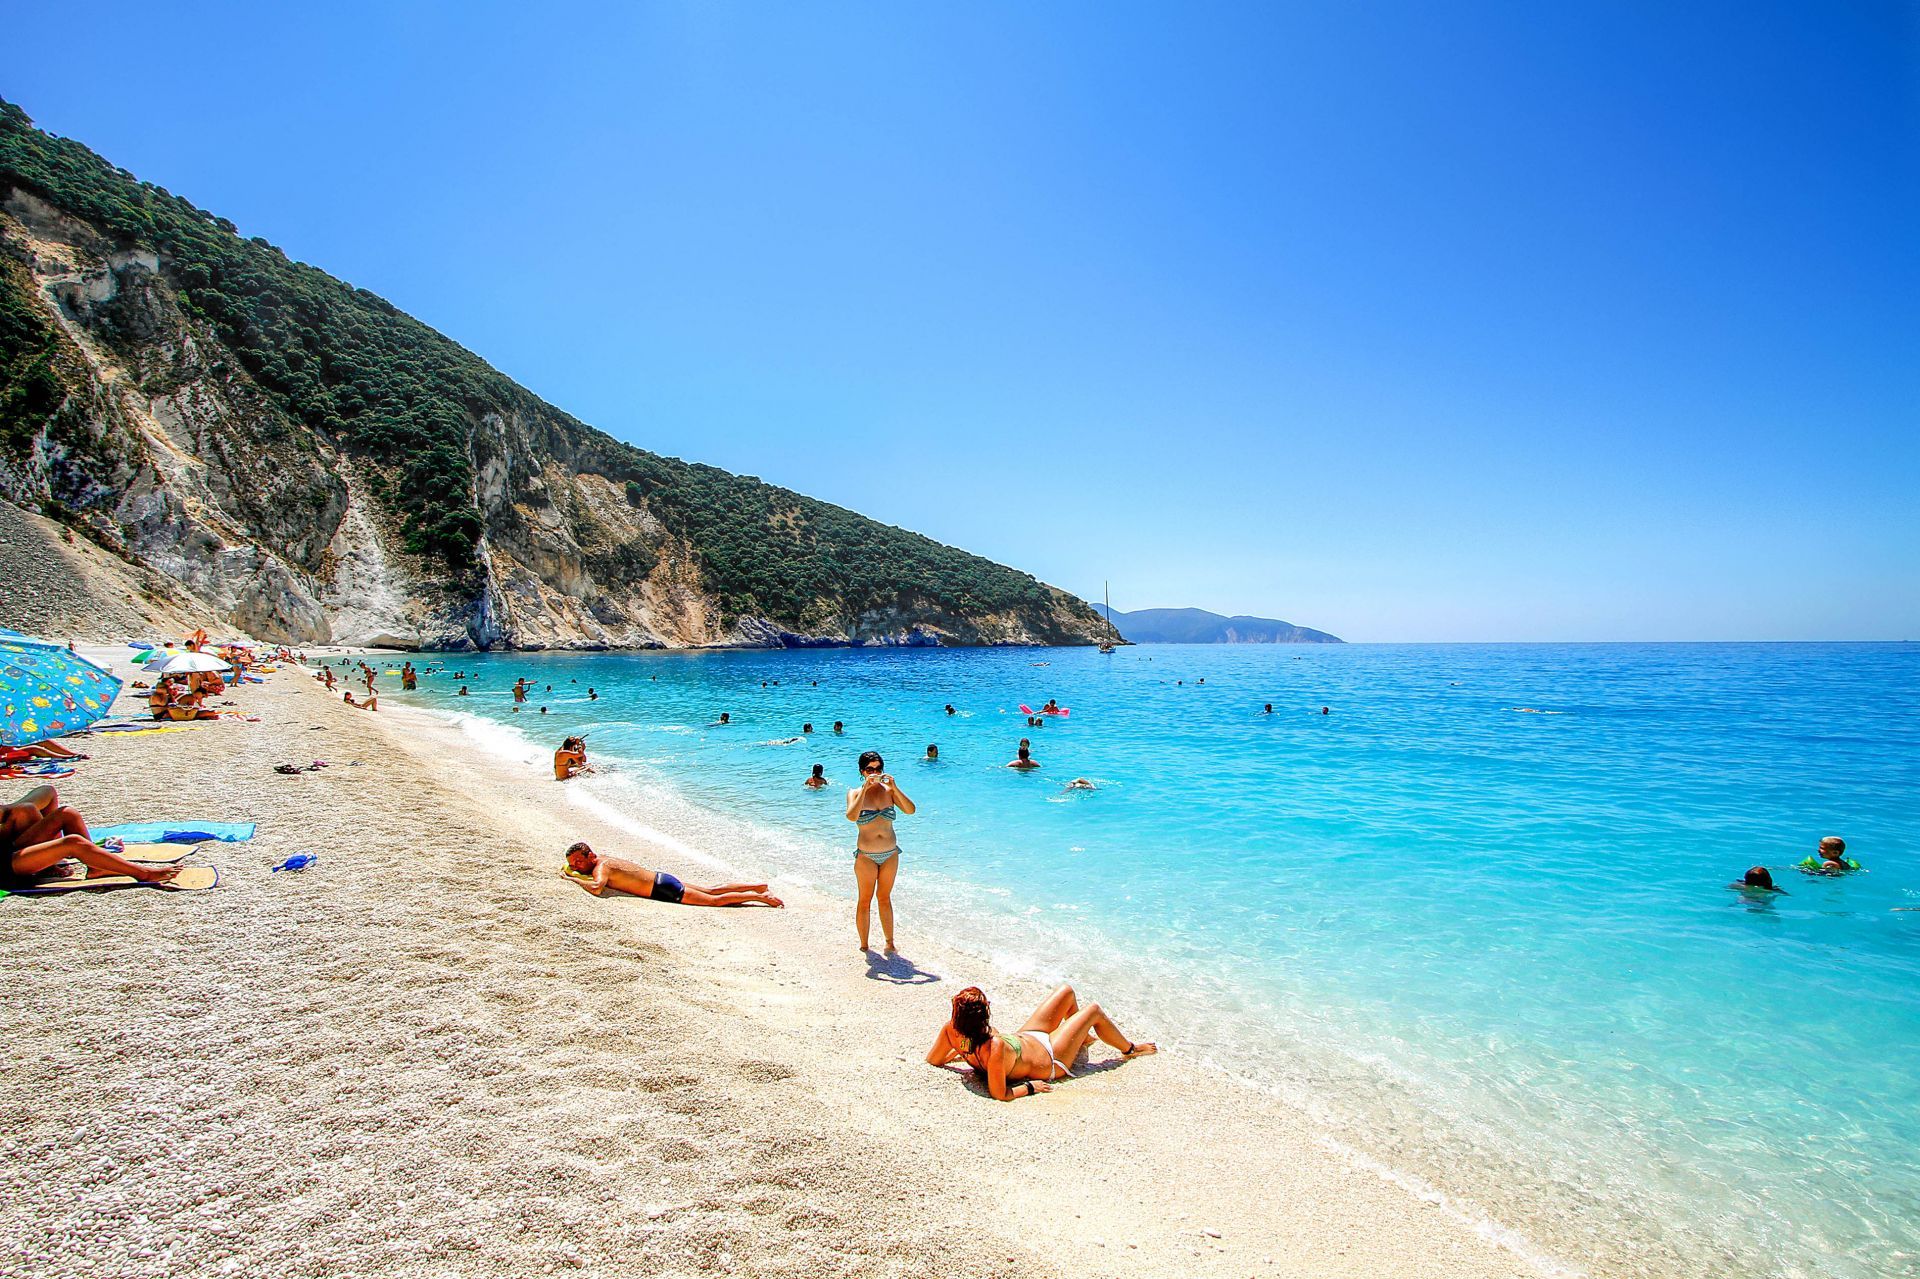 Kefalonia island: Myrtos, the spectacular beach